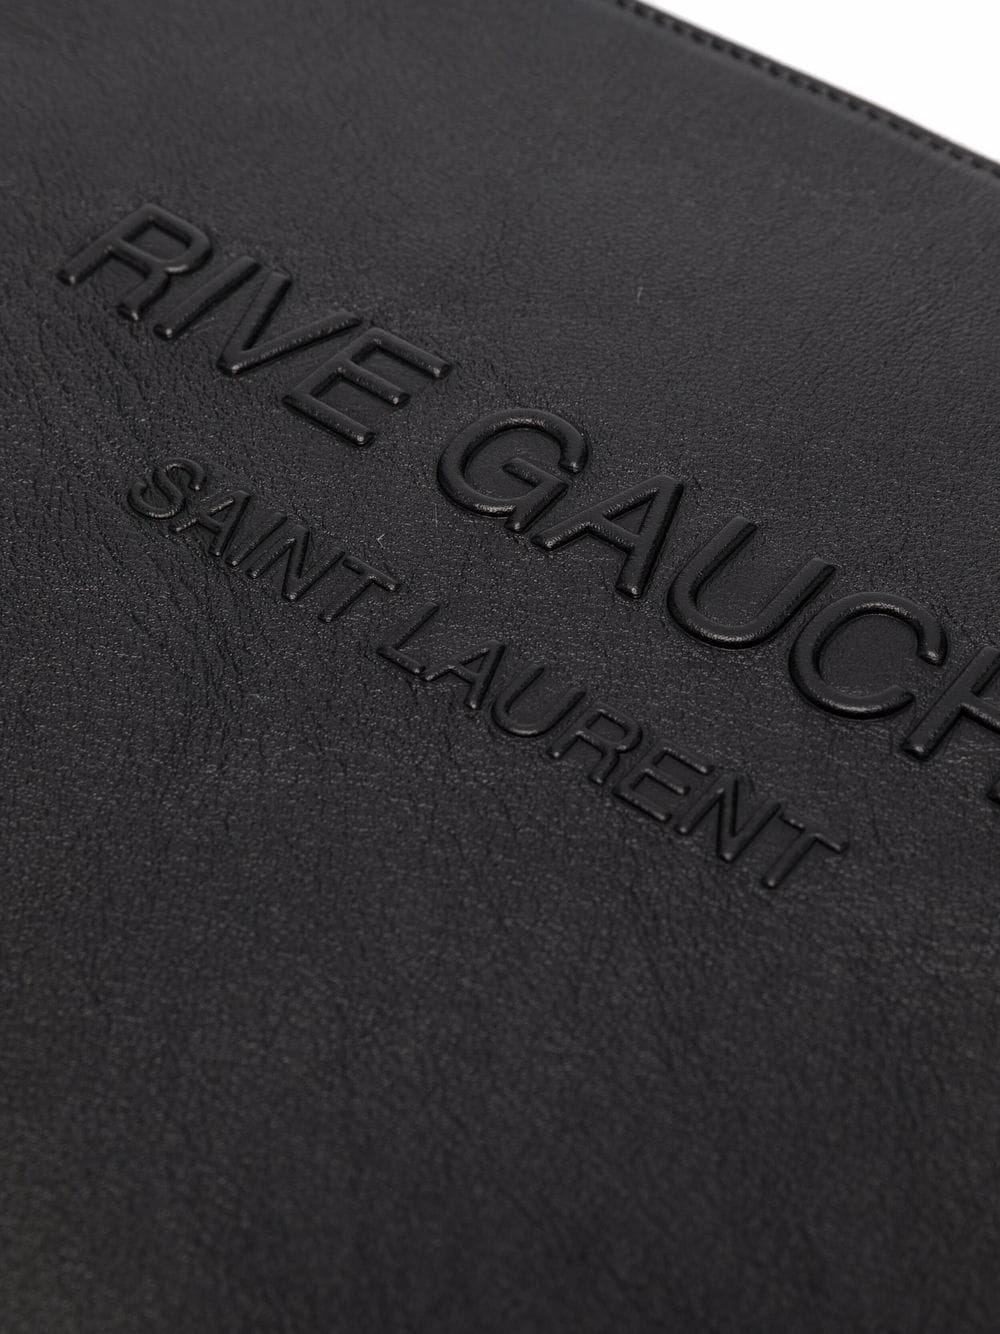 Saint Laurent Pochette Rive Gauche - Lothaire boutiques